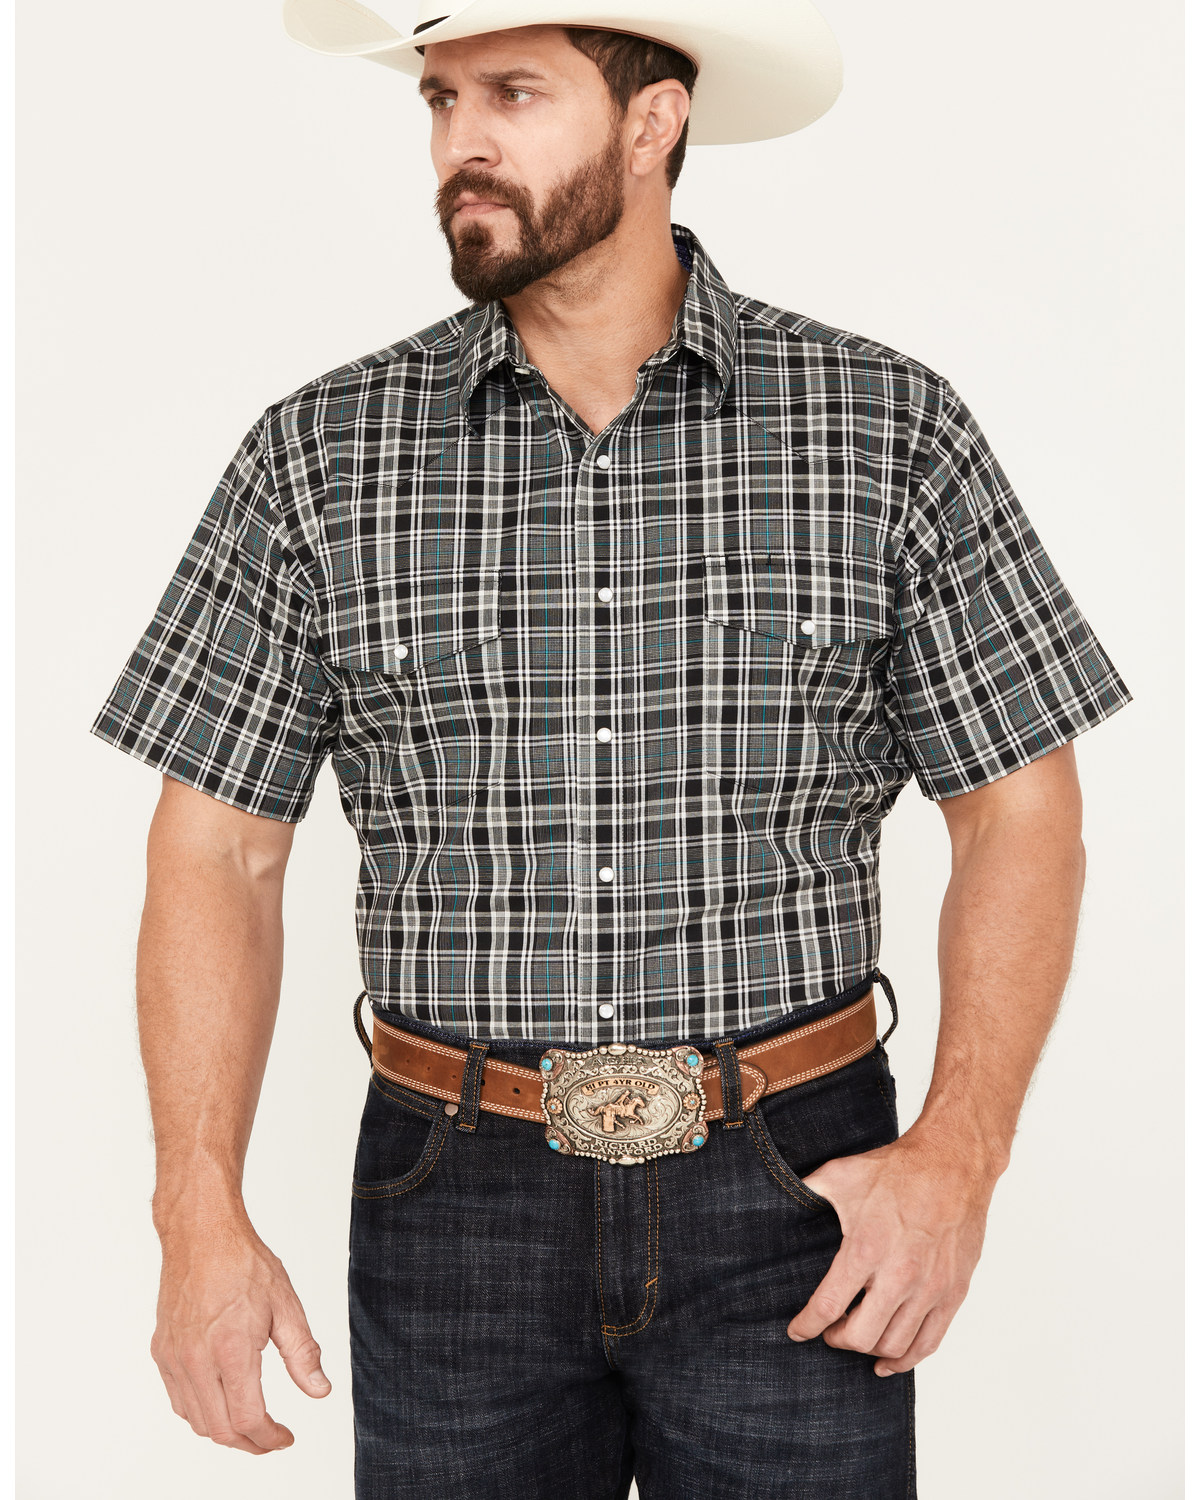 Wrangler Men's Wrinkle Resist Plaid Print Short Sleeve Pearl Snap Western Shirt